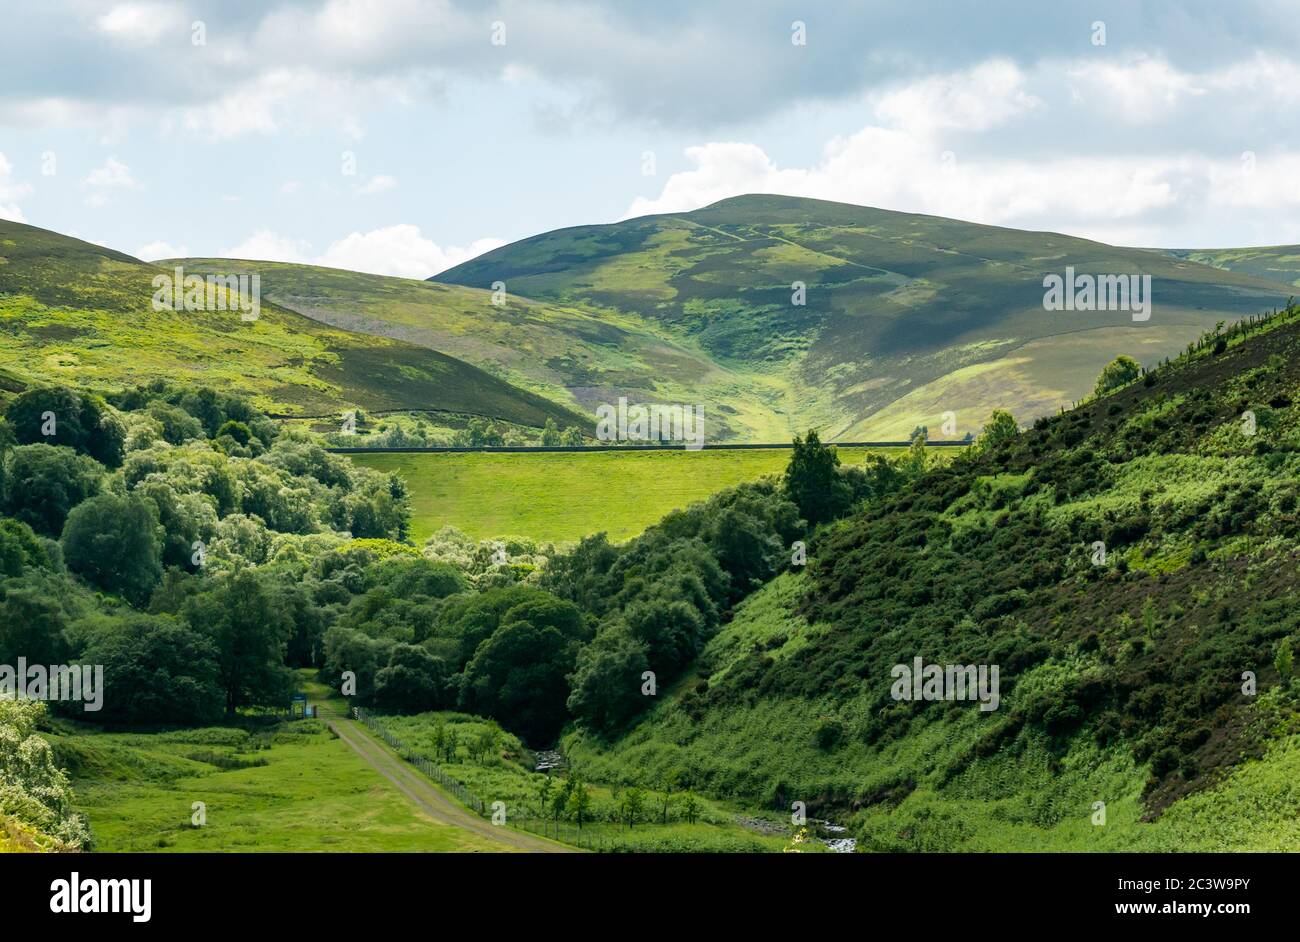 Vue du barrage de la rive de l'herbe dans la vallée, réservoir des espoirs, Lammermuir Hills, East Lothian, Écosse, Royaume-Uni Banque D'Images